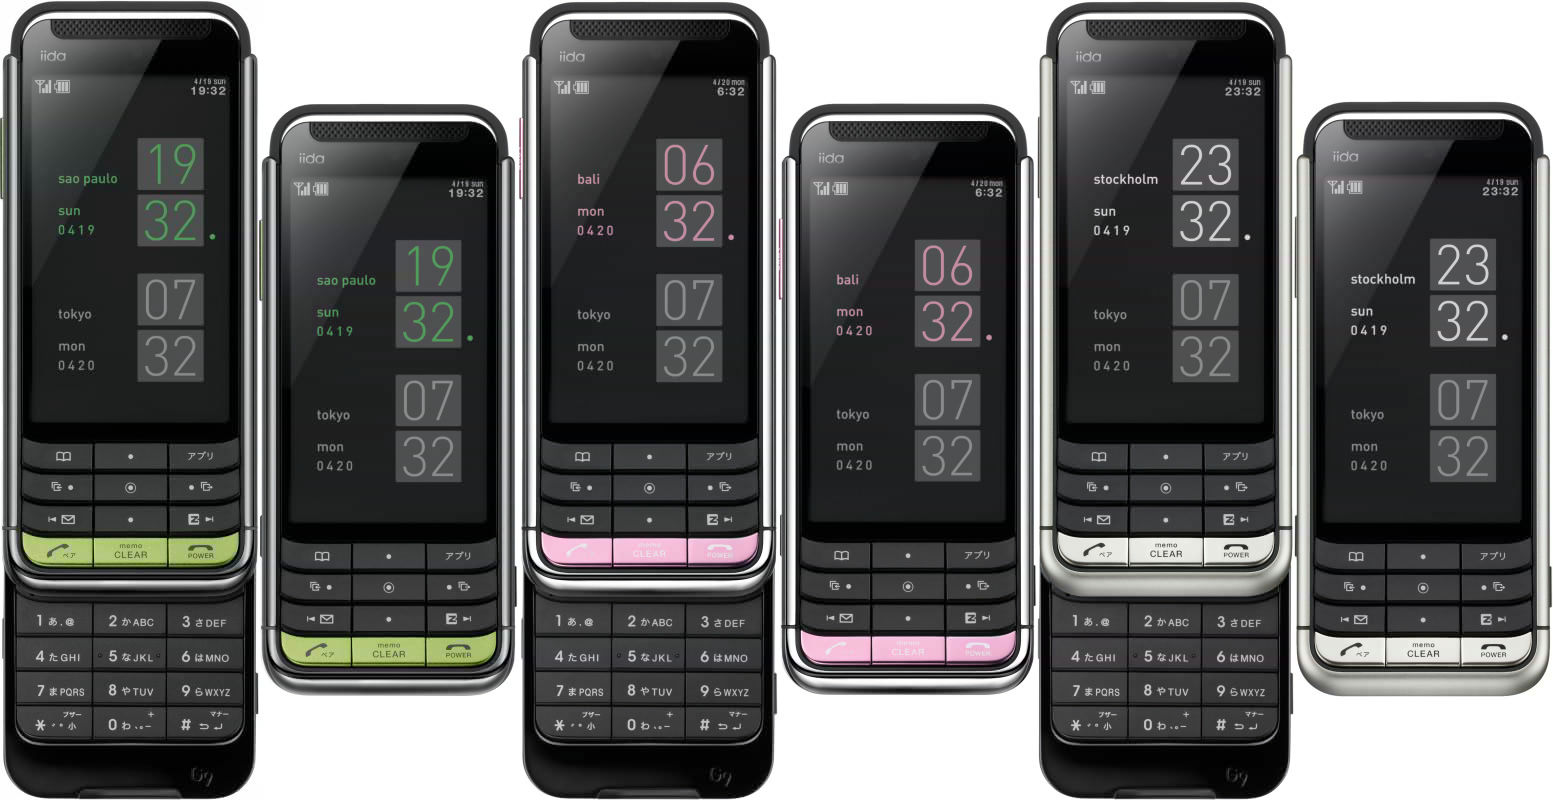 Sony Ericsson iida G9